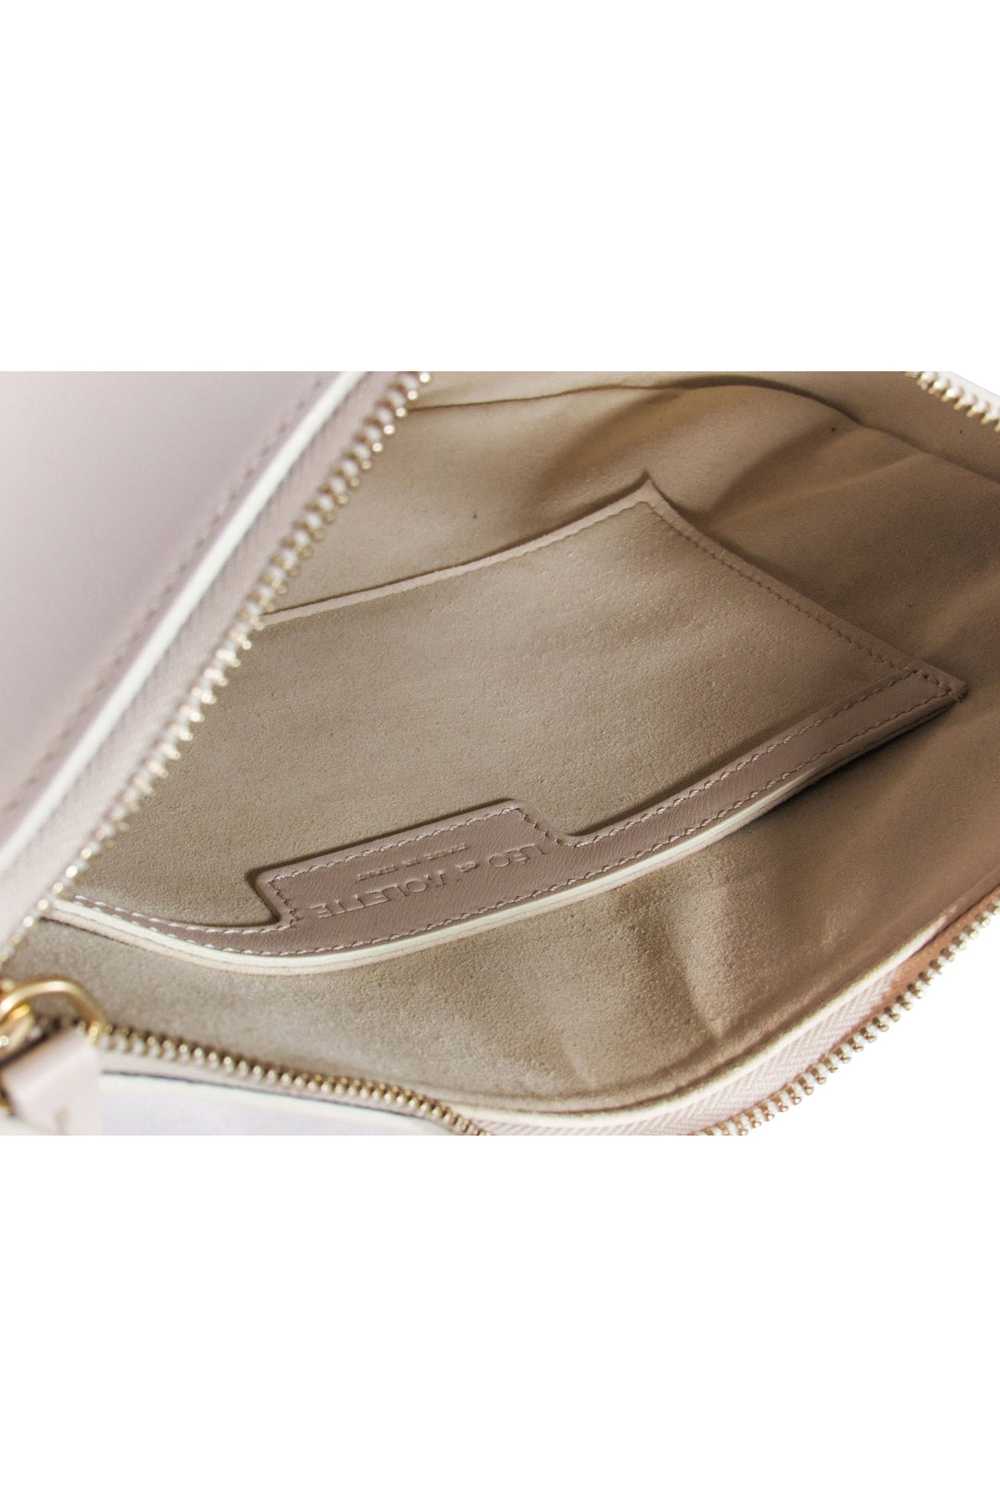 Leo et Violette - Cream Leather Shoulder Bag - image 5